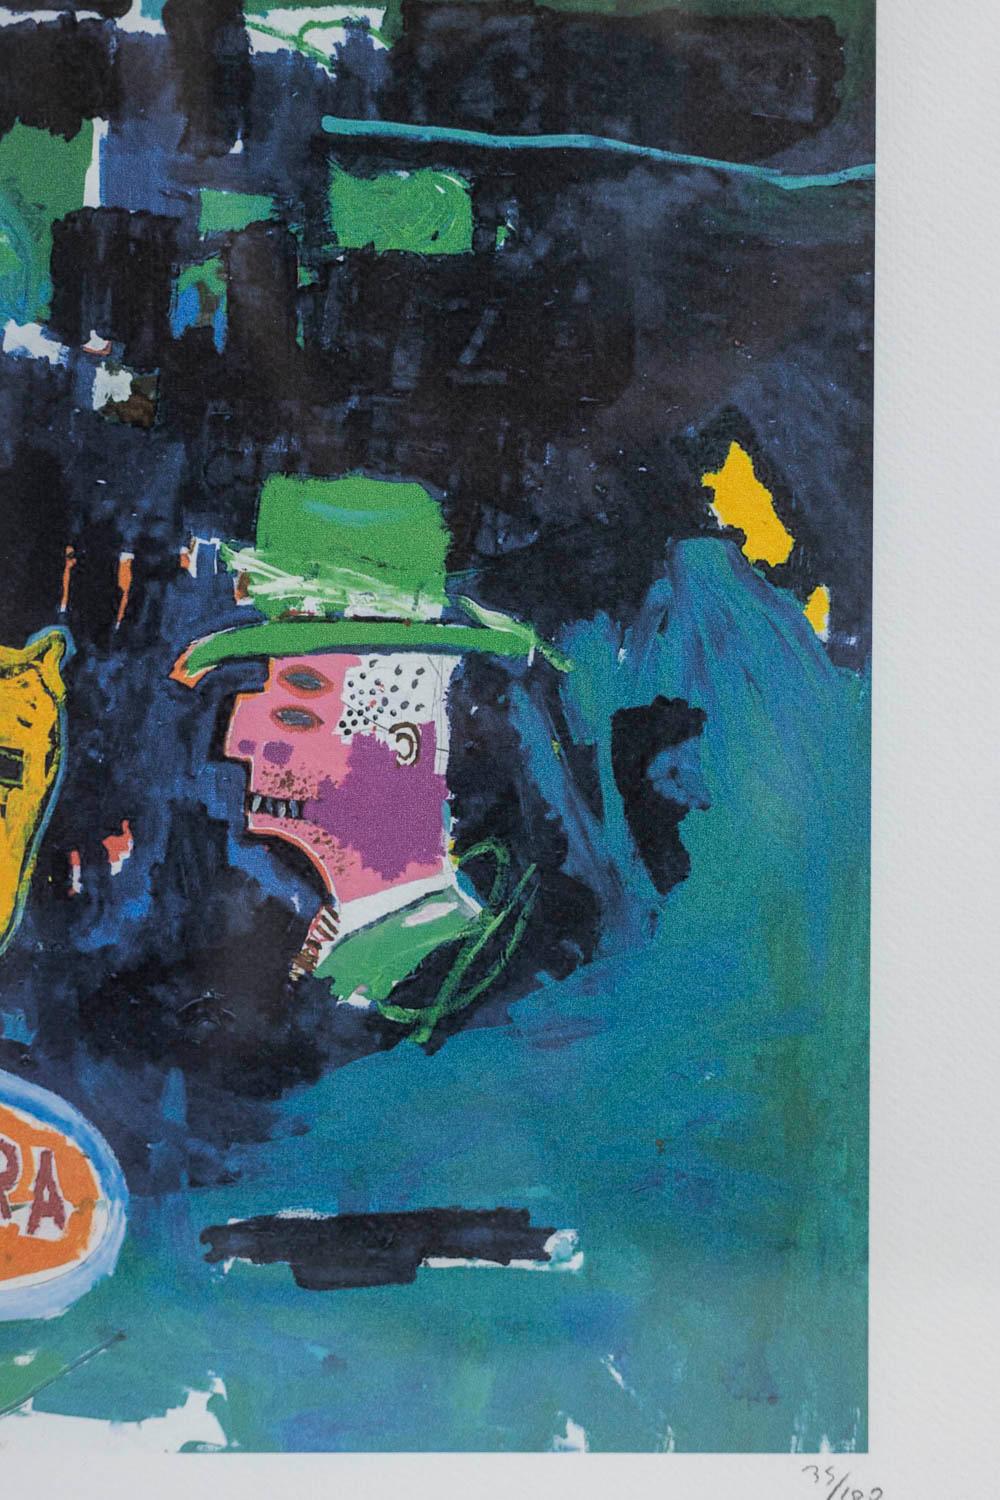 Jean-Michel Basquiat, signiert und nummeriert.

Abstrakter Siebdruck in Grün- und Blautönen in einem blonden Eichenrahmen.

Amerikanische Arbeiten aus den 1990er Jahren.

Nummeriert 75/100.

Abmessungen: H 50 x B 70 x T 2 cm

Referenz: LS5848D131A